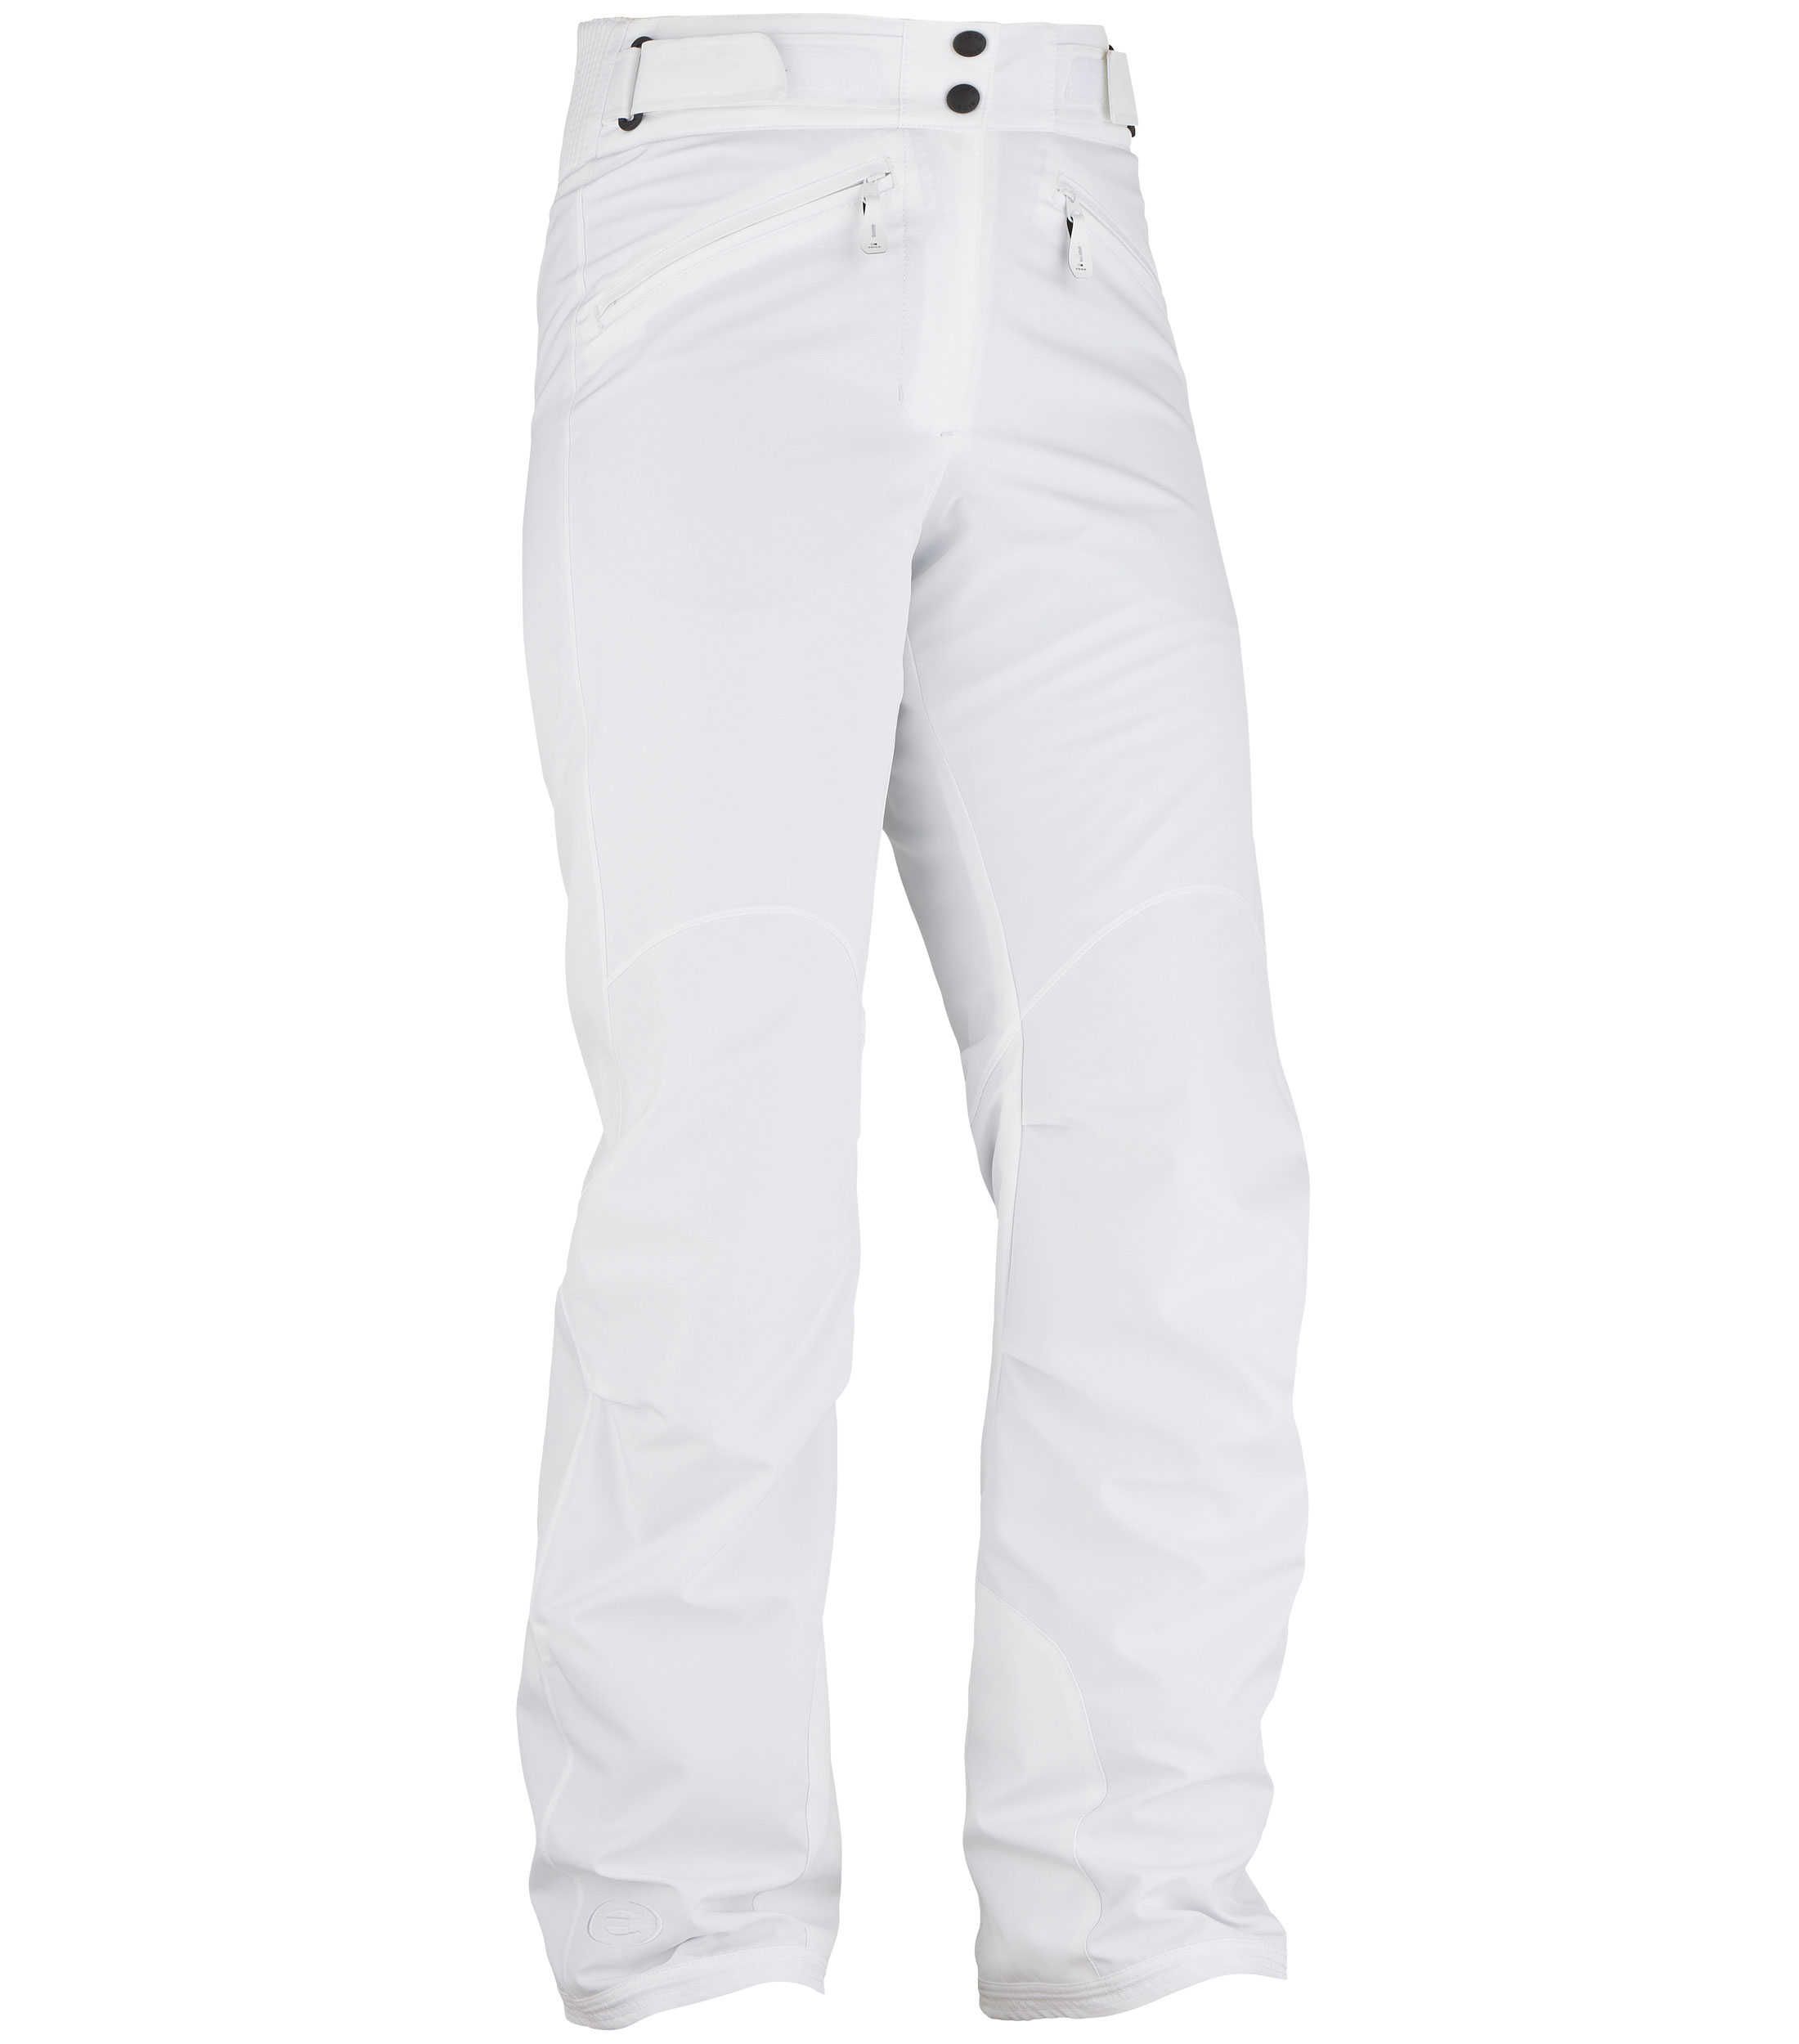 Pantalon de Ski Femme Lamolina Pant 2.0 W